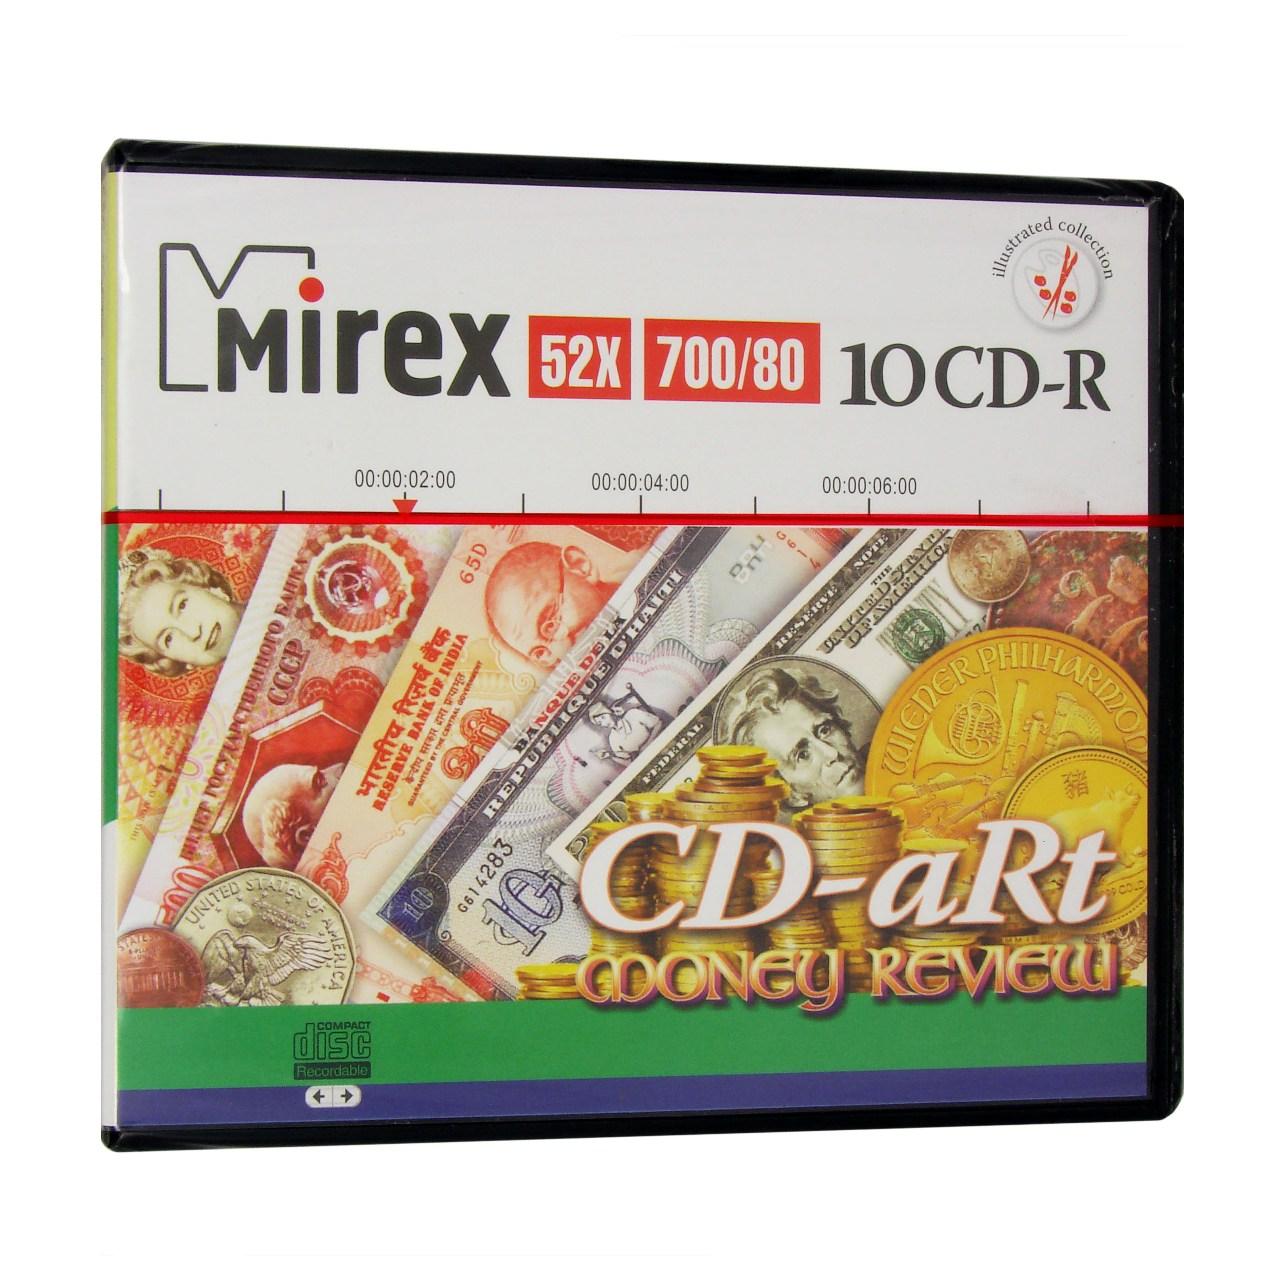 CD-R (10 шт.) 700Mb Mirex 52x CD-aRt MONEY REVIEW,  Портмоне пласт. на  10CD